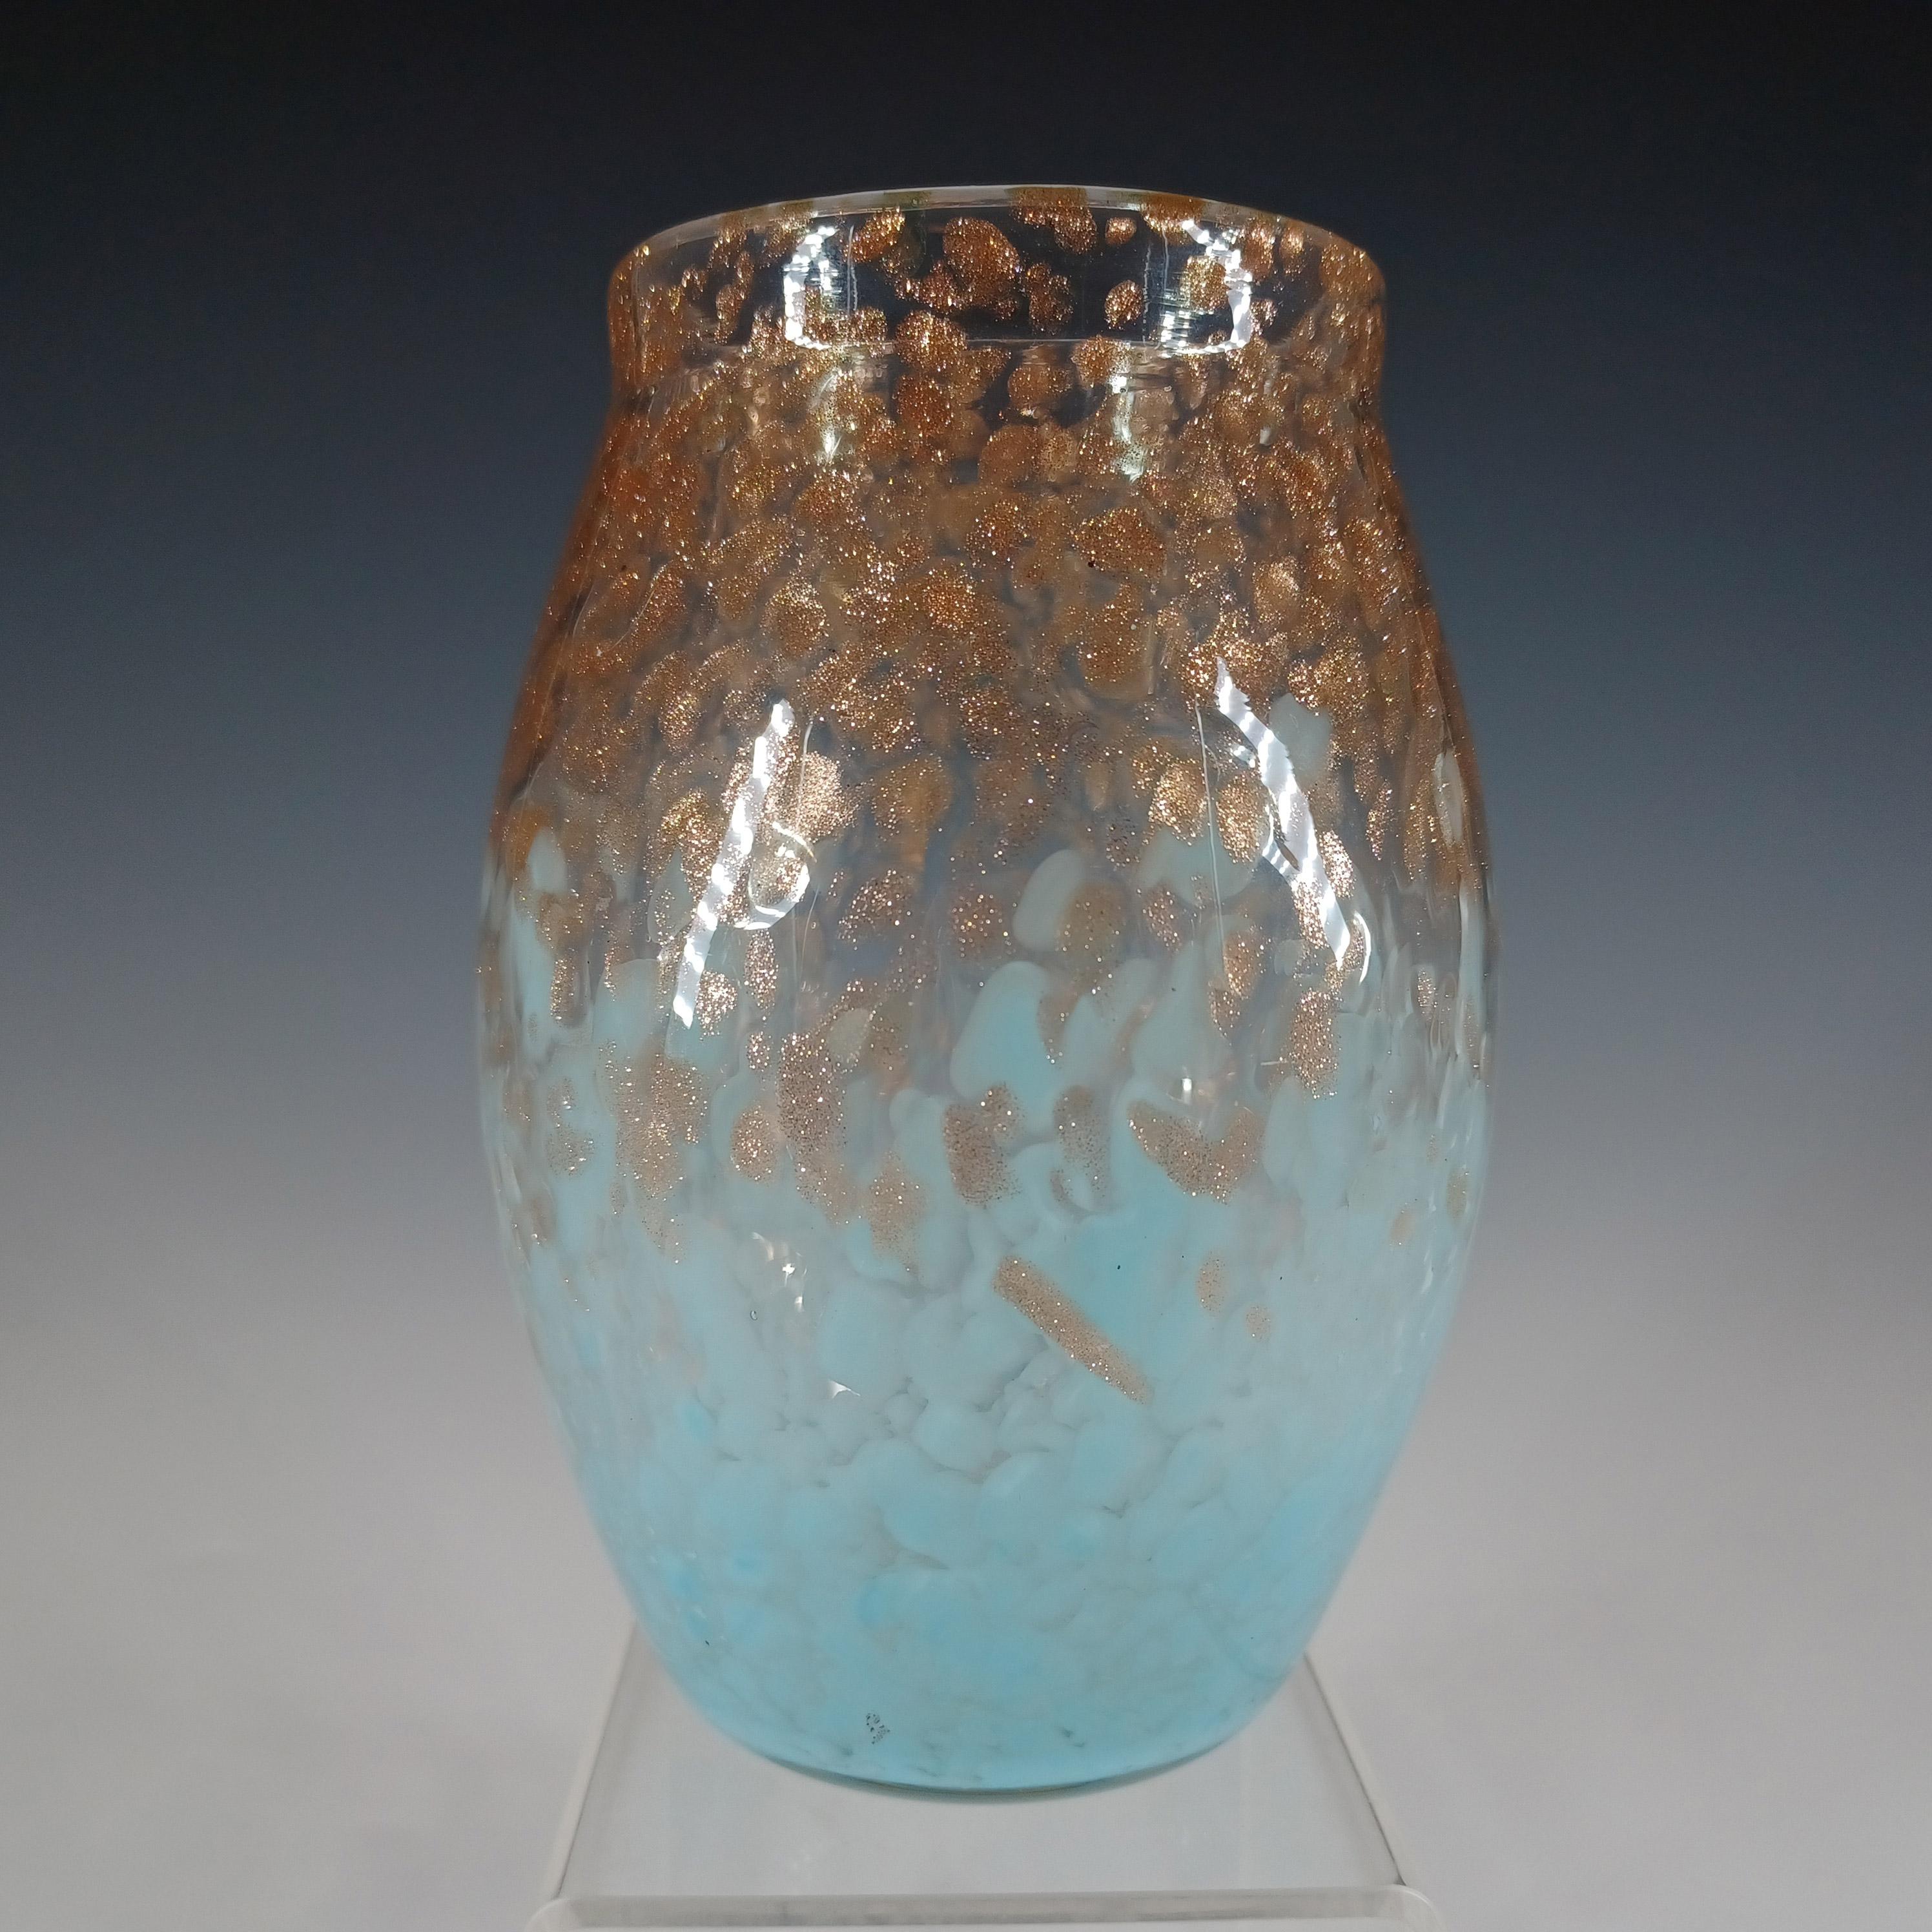 Un petit vase Monart en verre chiné bleu pâle avec des mouchetures d'aventurine de cuivre. Fabriqué par l'usine écossaise Moncrieff's dans les années 1930/40, numéro de forme MF. Non marquée, elle présente la finition classique de la base Monart